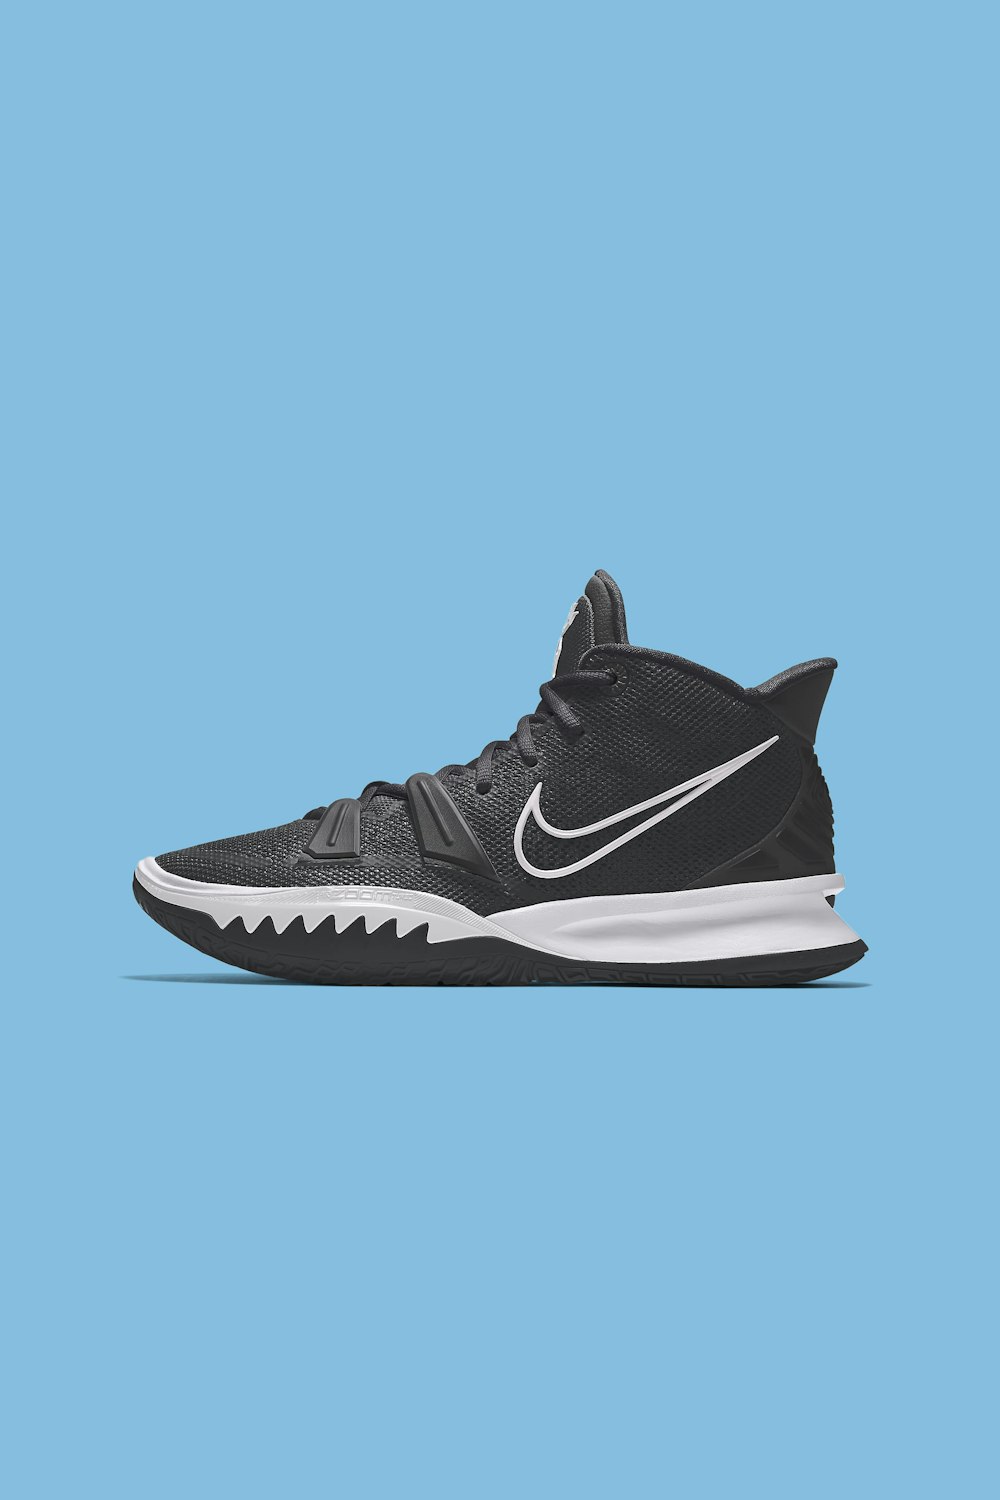 Zapatillas deportivas Nike en blanco y negro